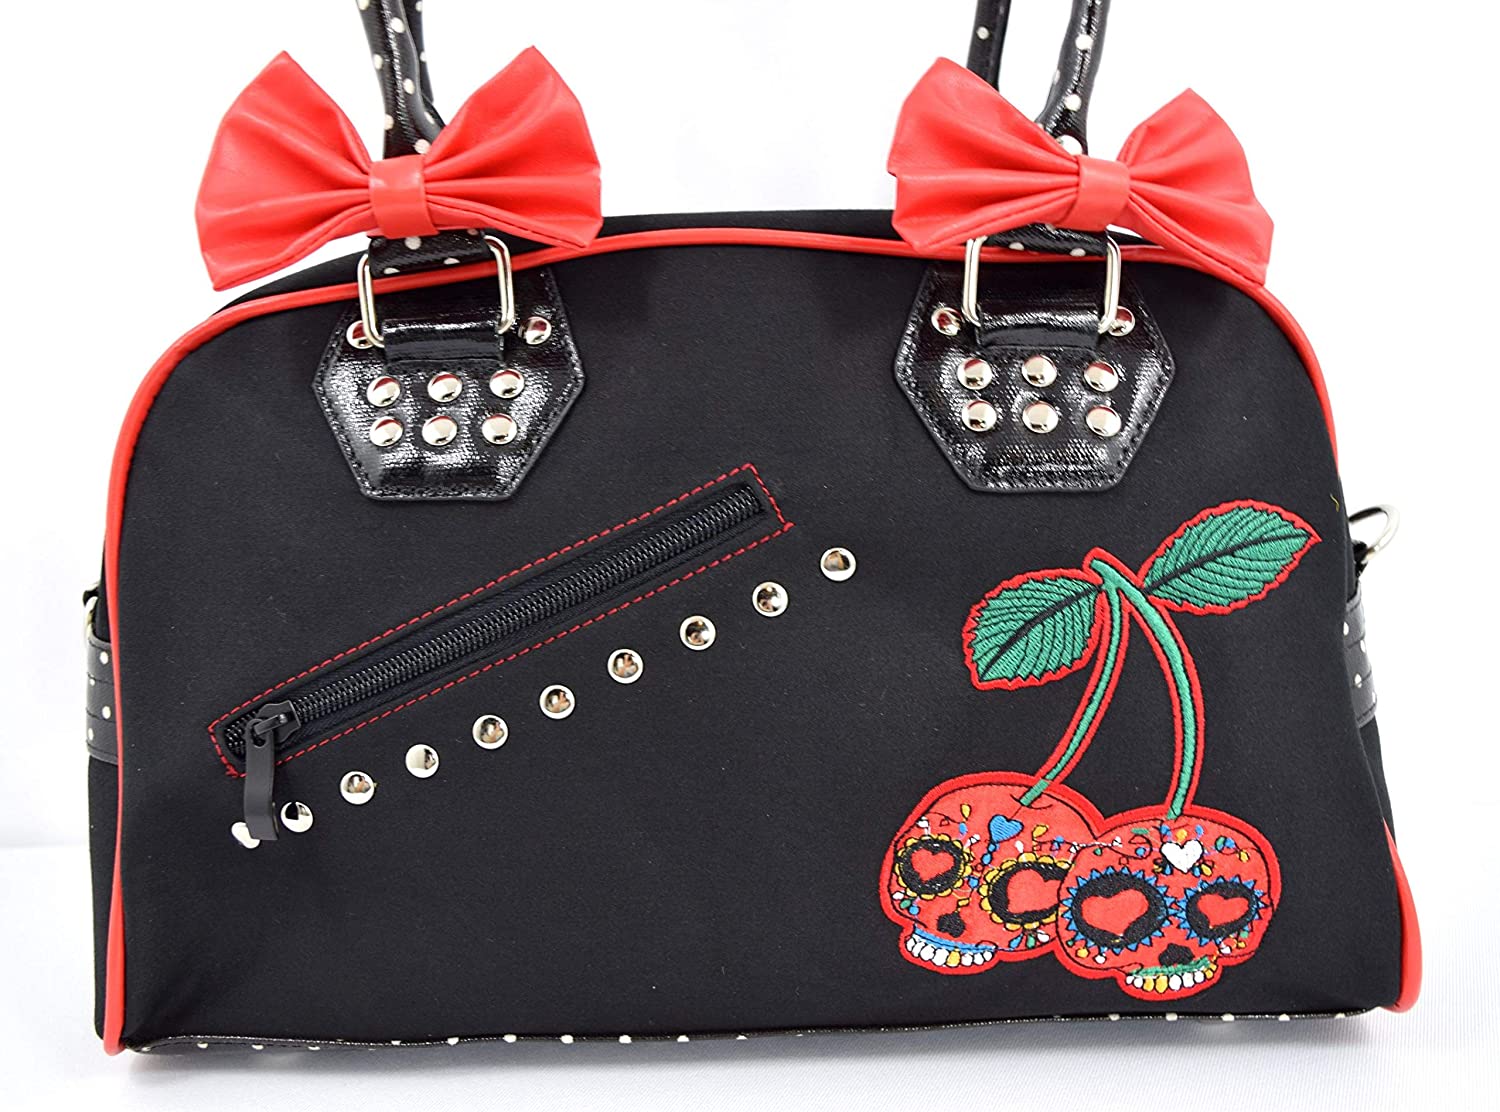 Lost Queen Cherry Bomb Skull Cherries Polka Dot Bow Handbag Rockabilly Black Red